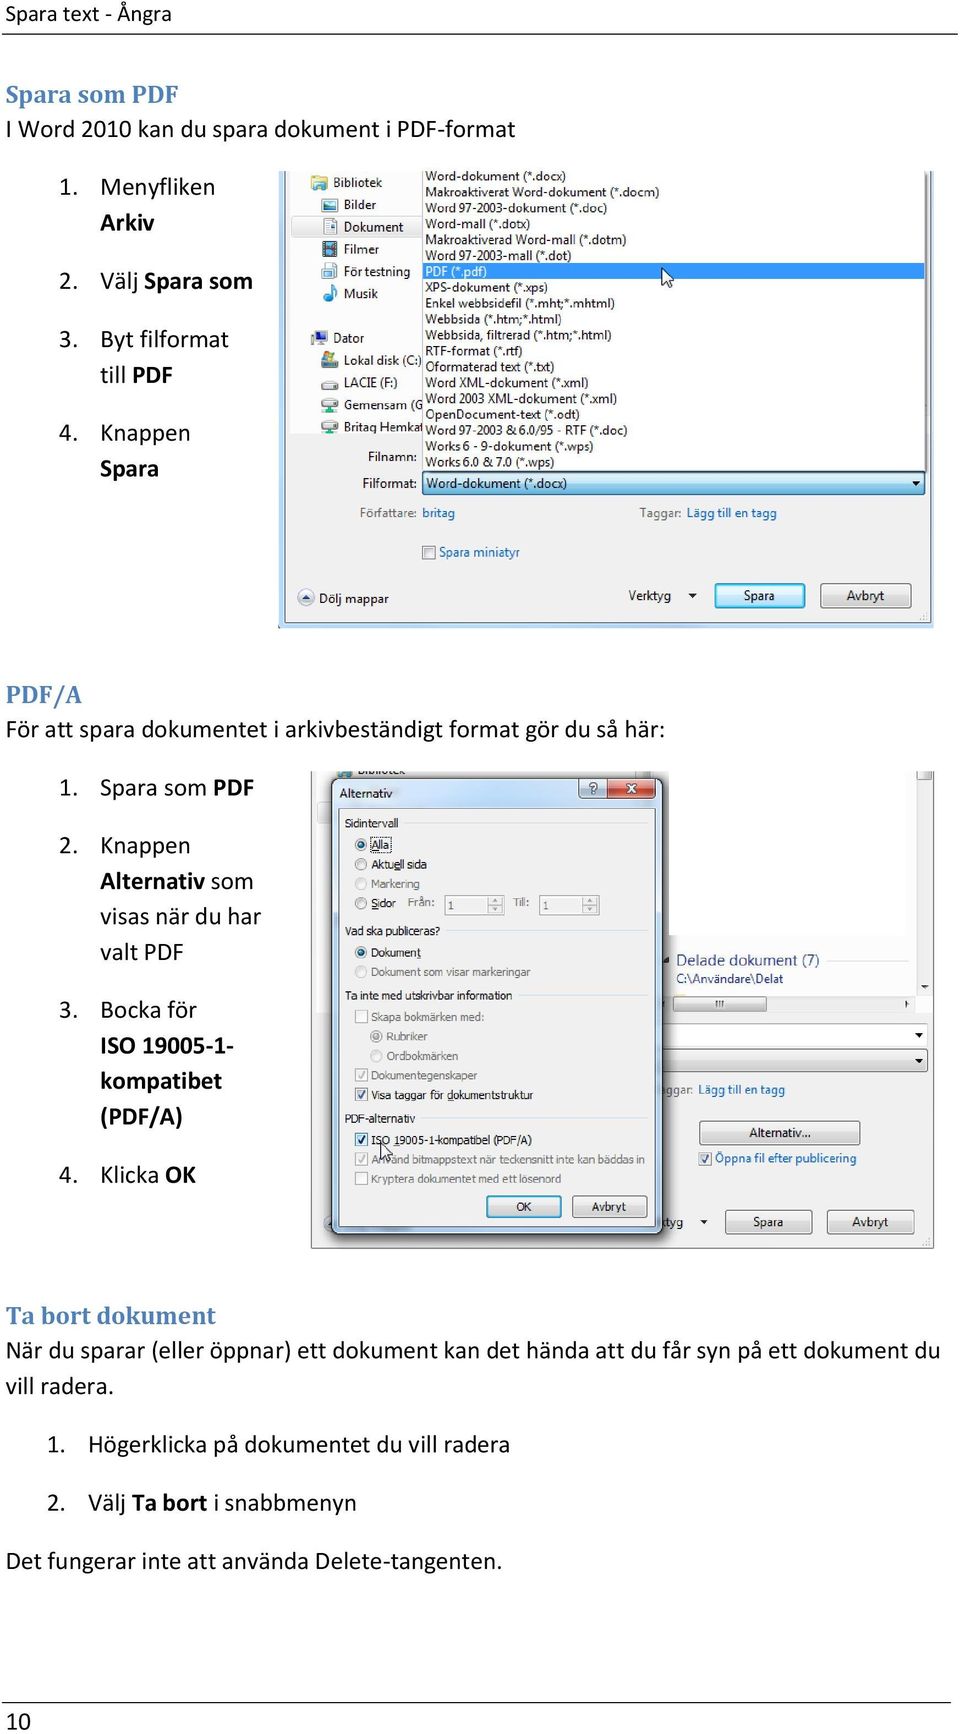 Knappen Alternativ som visas när du har valt PDF 3. Bocka för ISO 19005-1- kompatibet (PDF/A) 4.